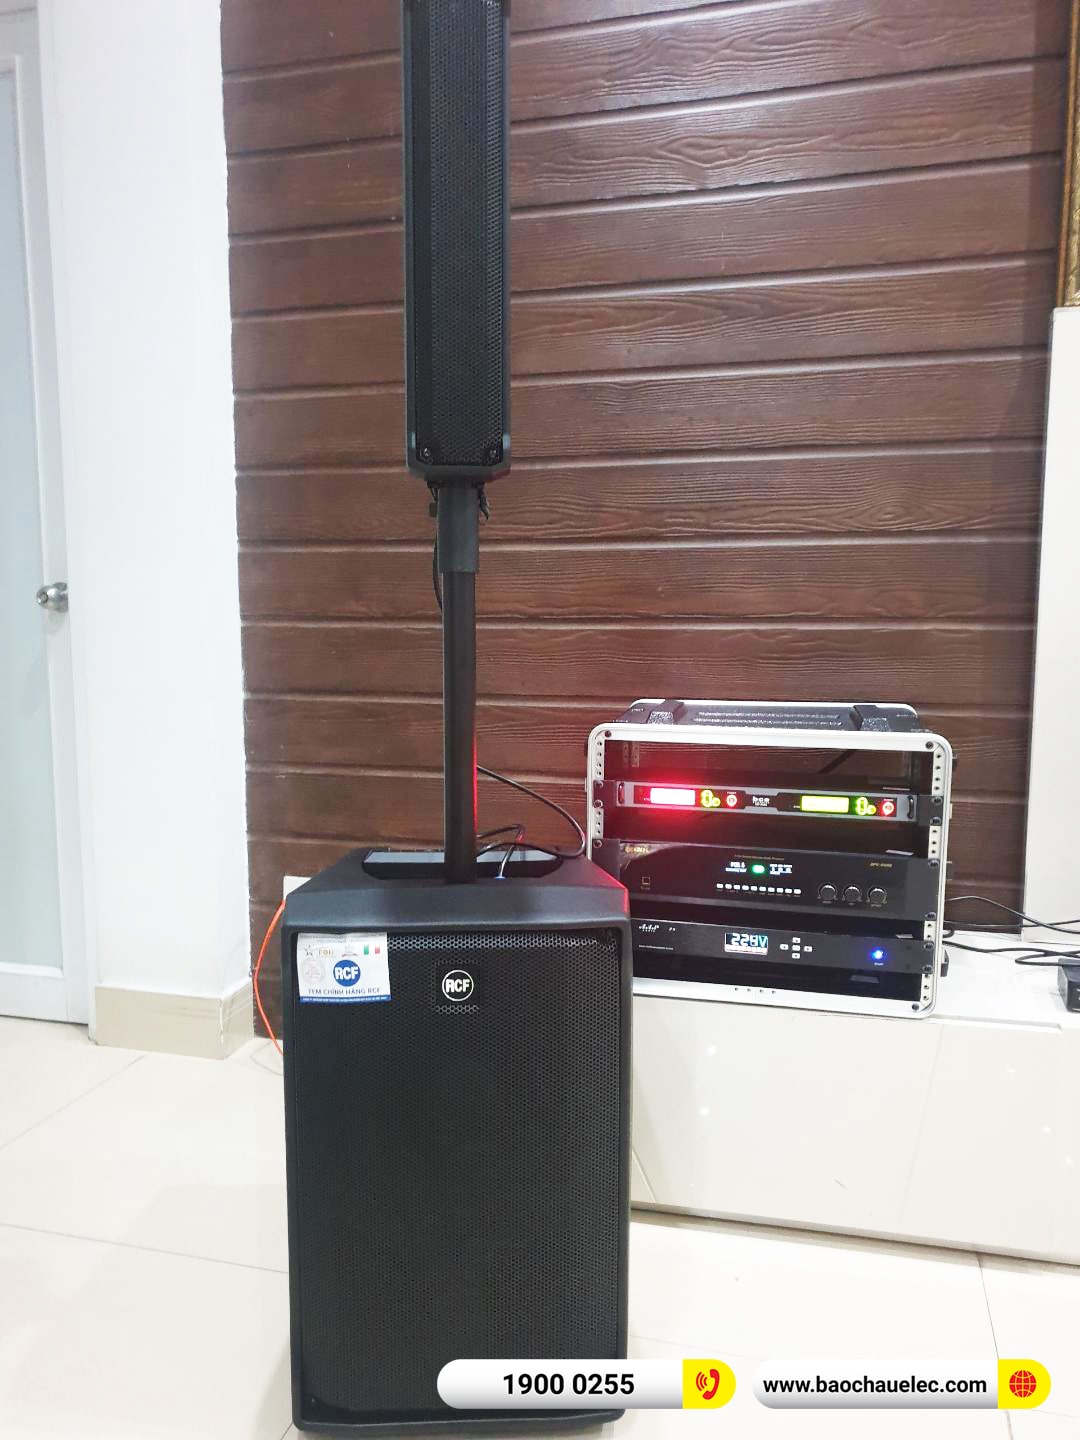 Lắp đặt dàn karaoke di động RCF gần 102tr cho anh Khải tại Đồng Nai (RCF Evox Jmix8, BPC-R500, VIP6000, AAP P8) 